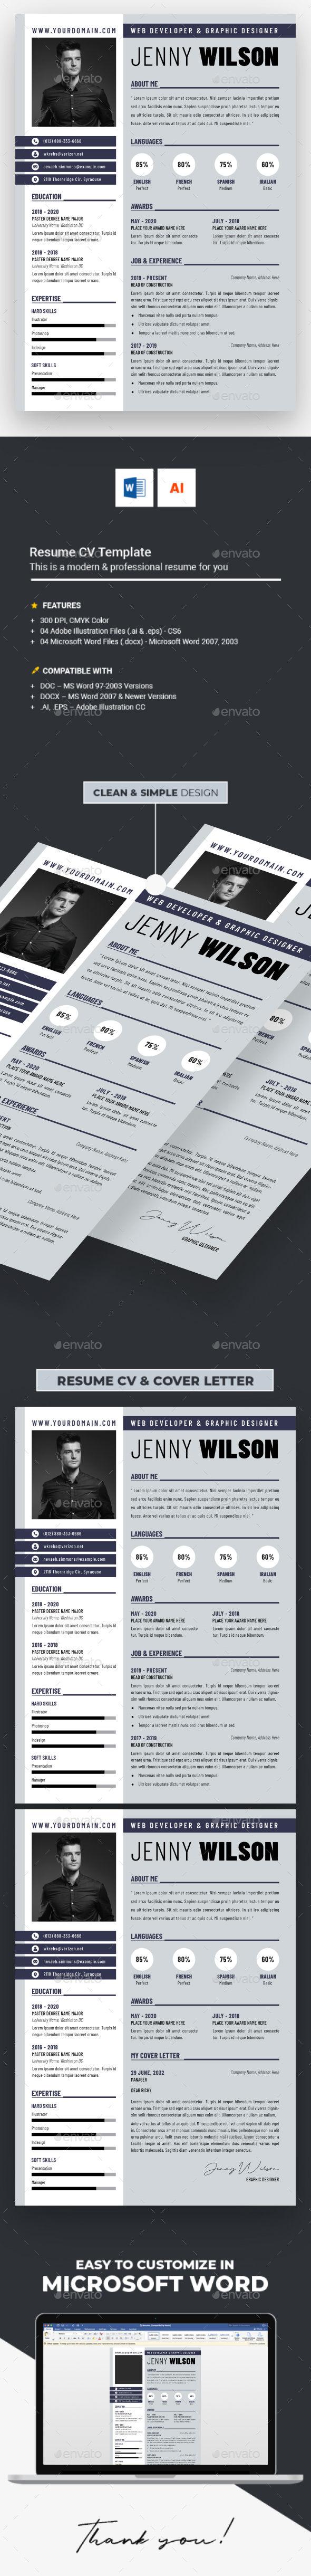 [DOWNLOAD]Business Resume CV